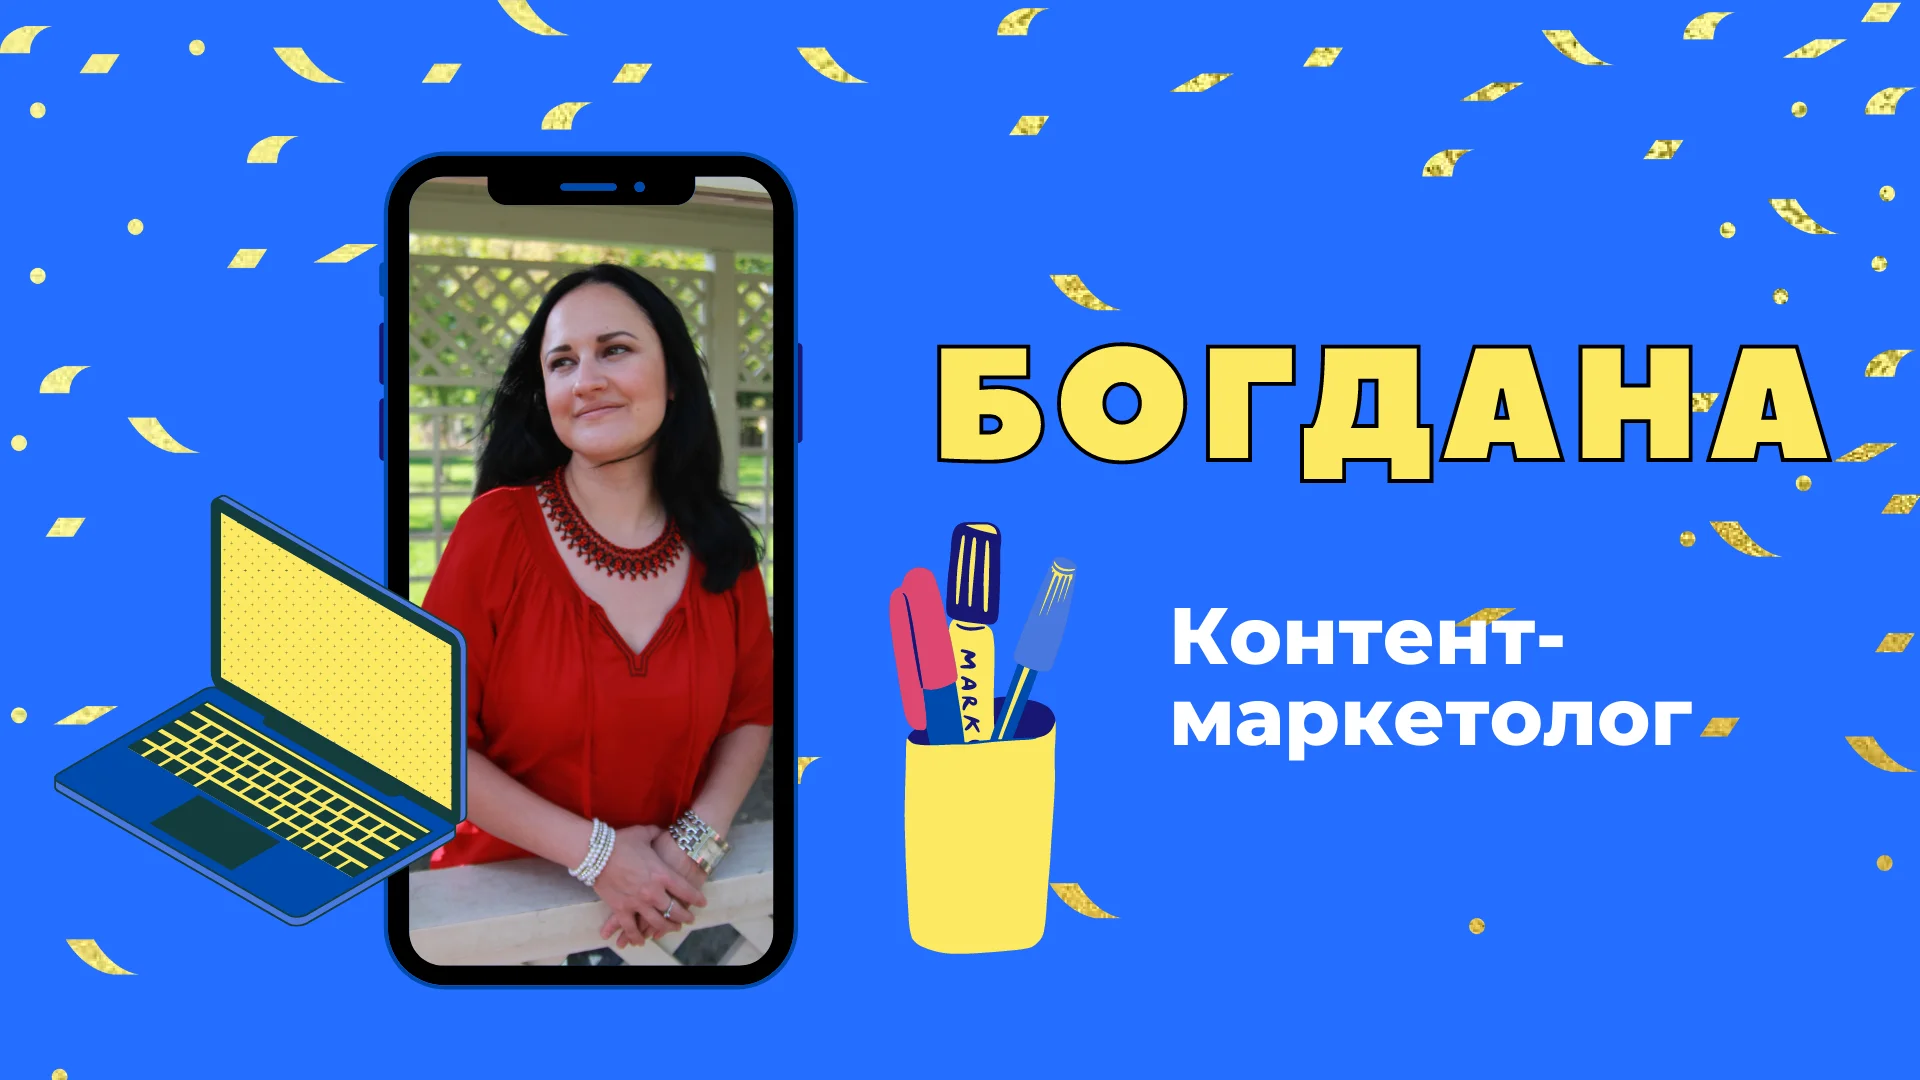 Богдана - контент-маркетолог